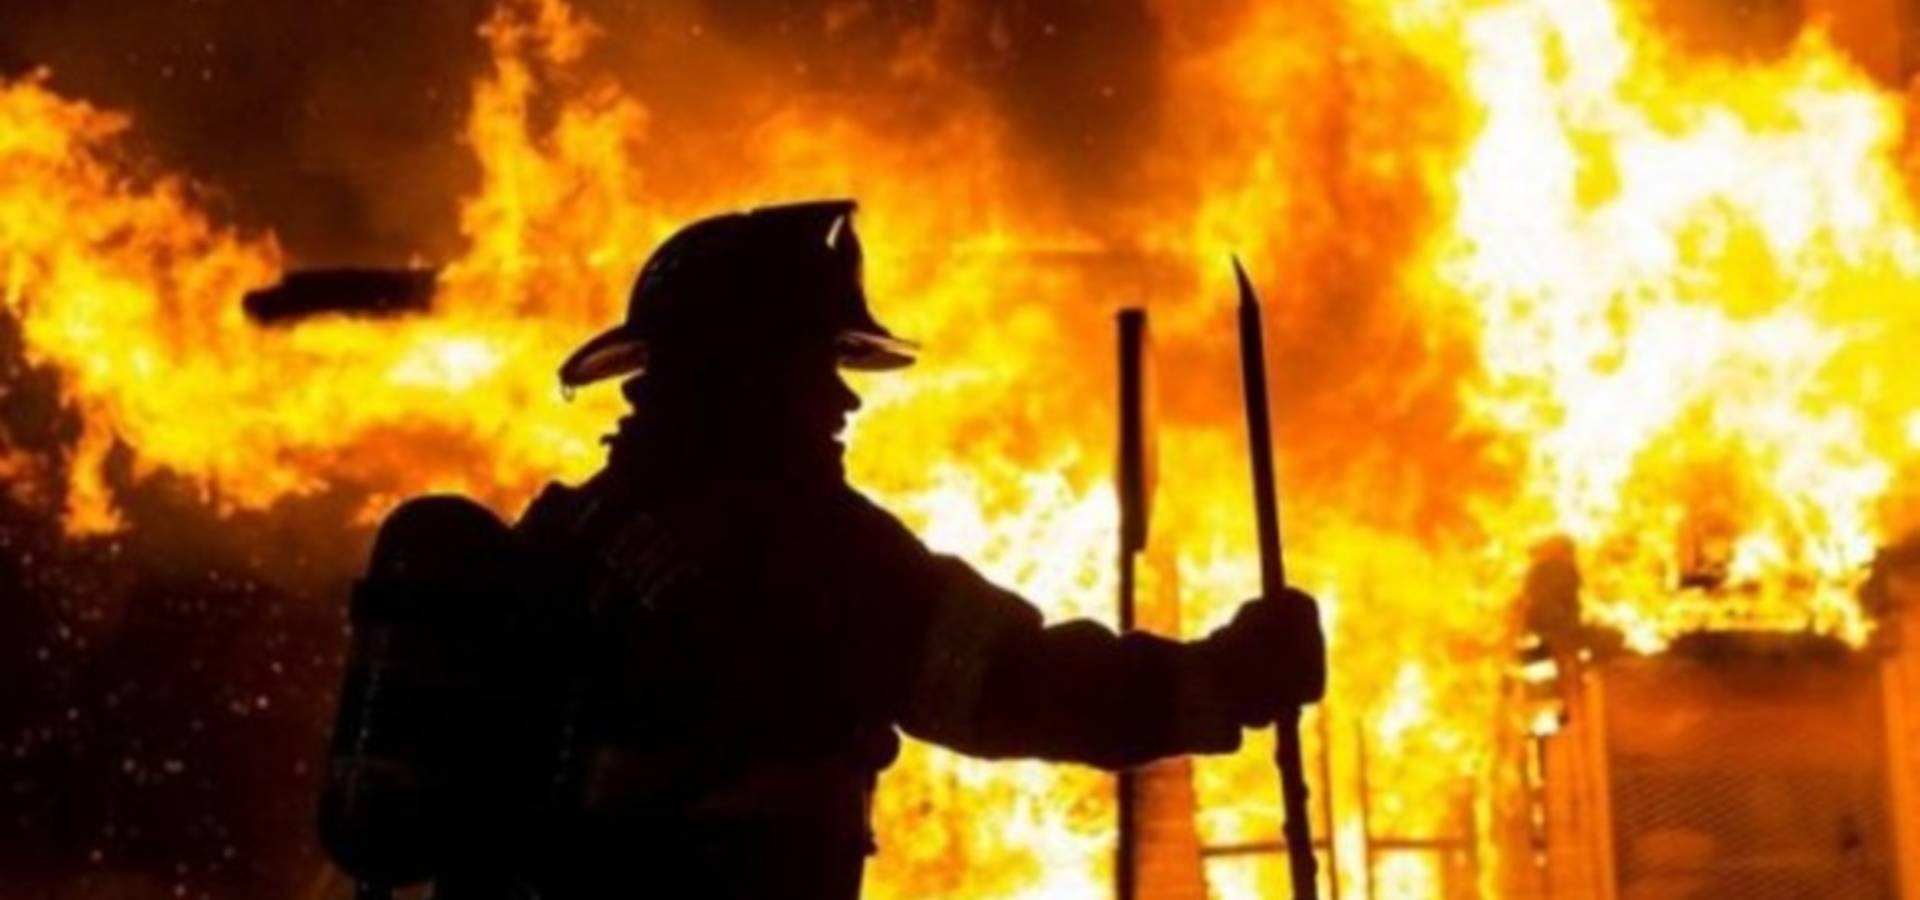 Чотири пожежі за тиждень сталось у Хмільницькому районі на Вінниччині